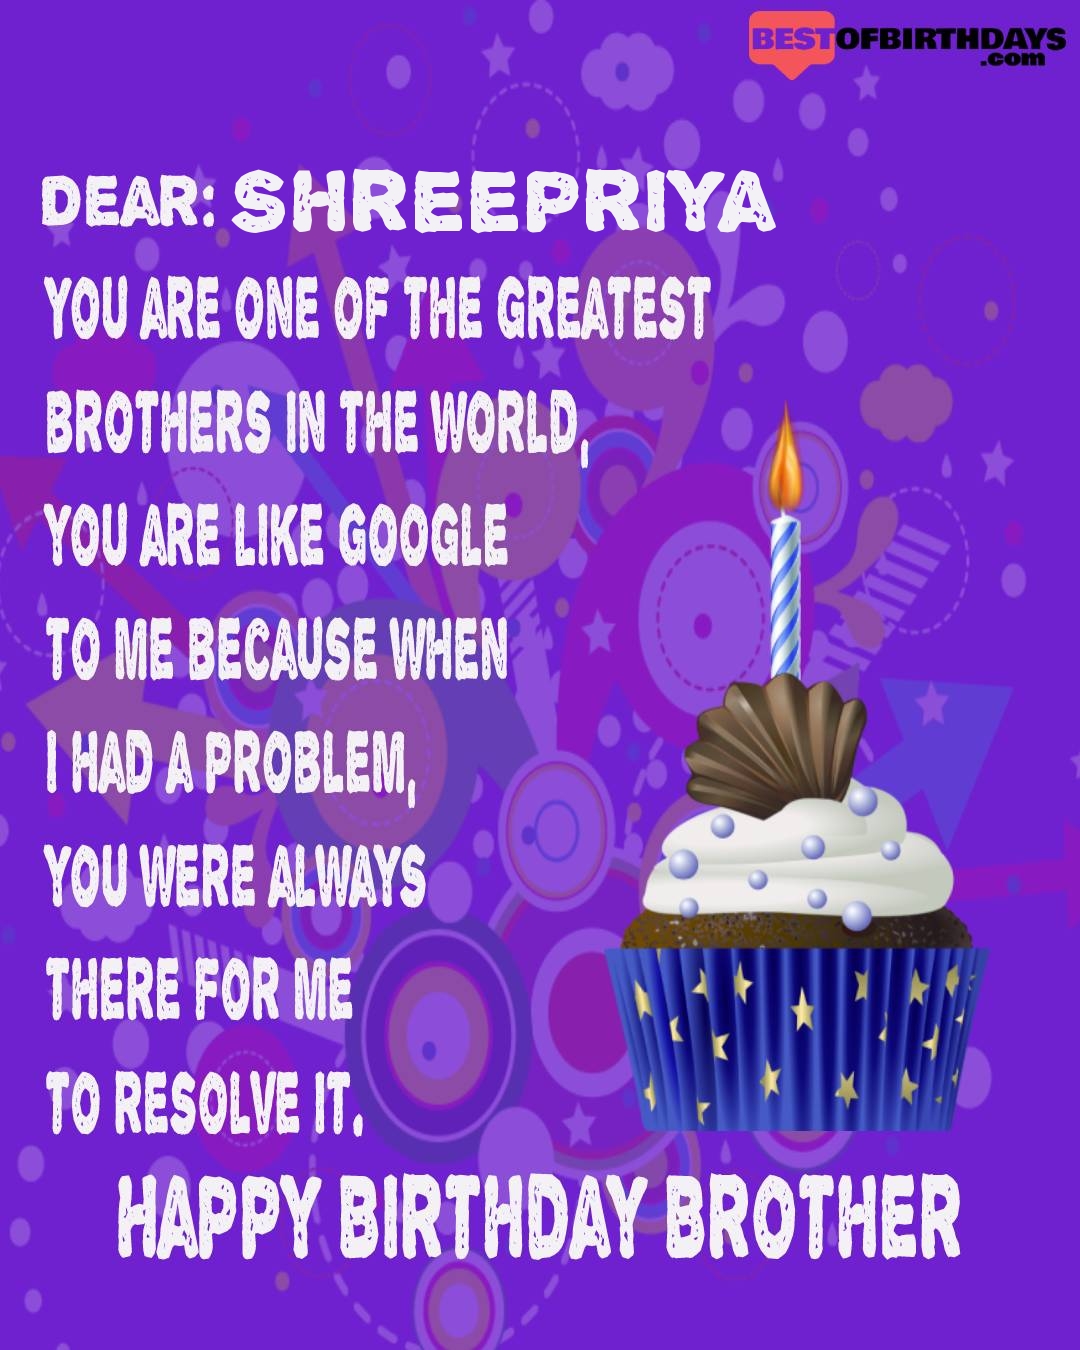 Happy birthday shreepriya bhai brother bro